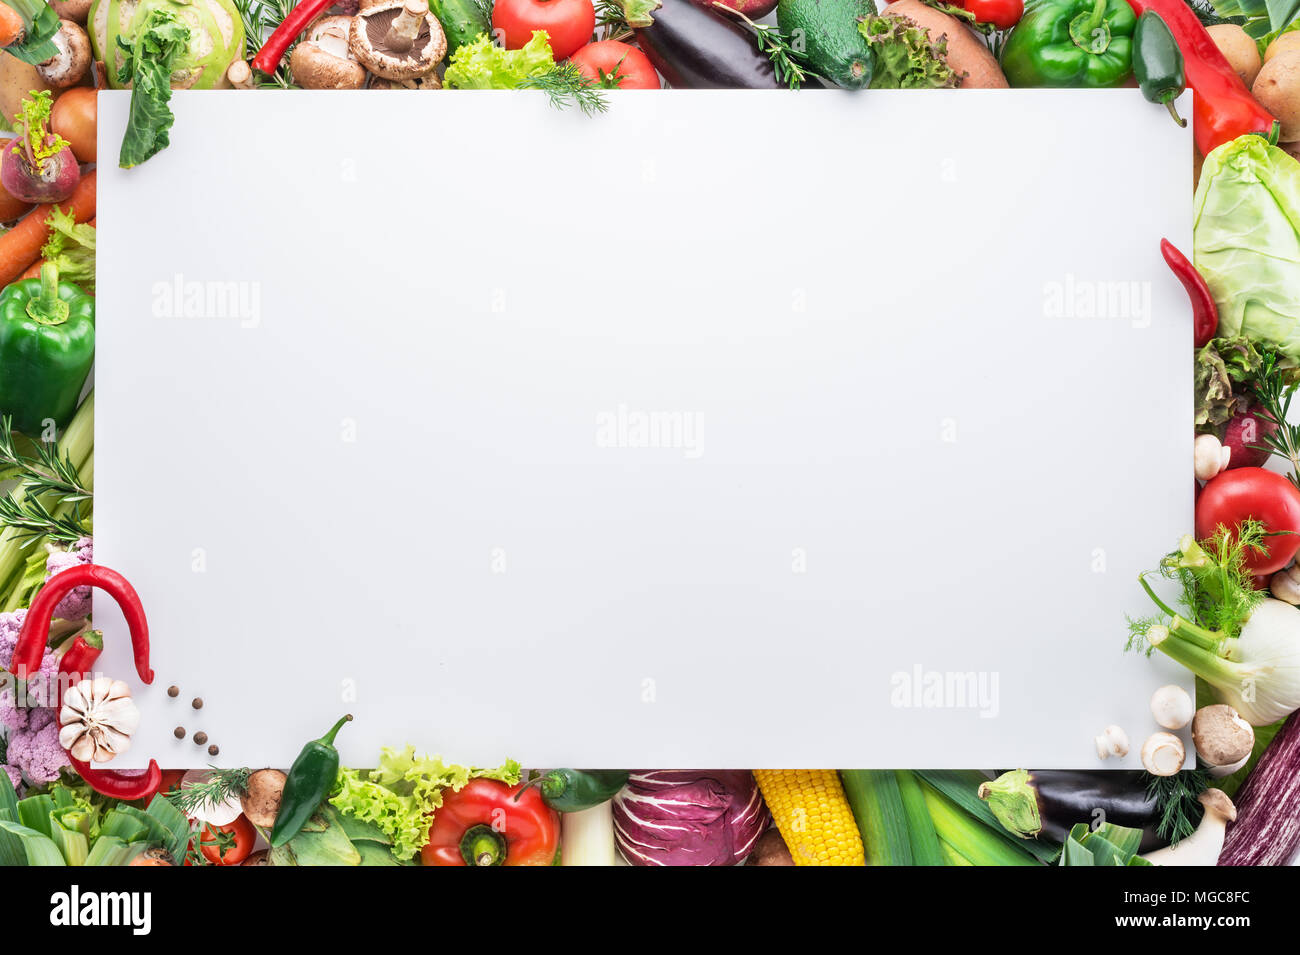 Différents légumes colorés disposés comme une trame sur fond blanc. Espace libre pour votre texte. Banque D'Images